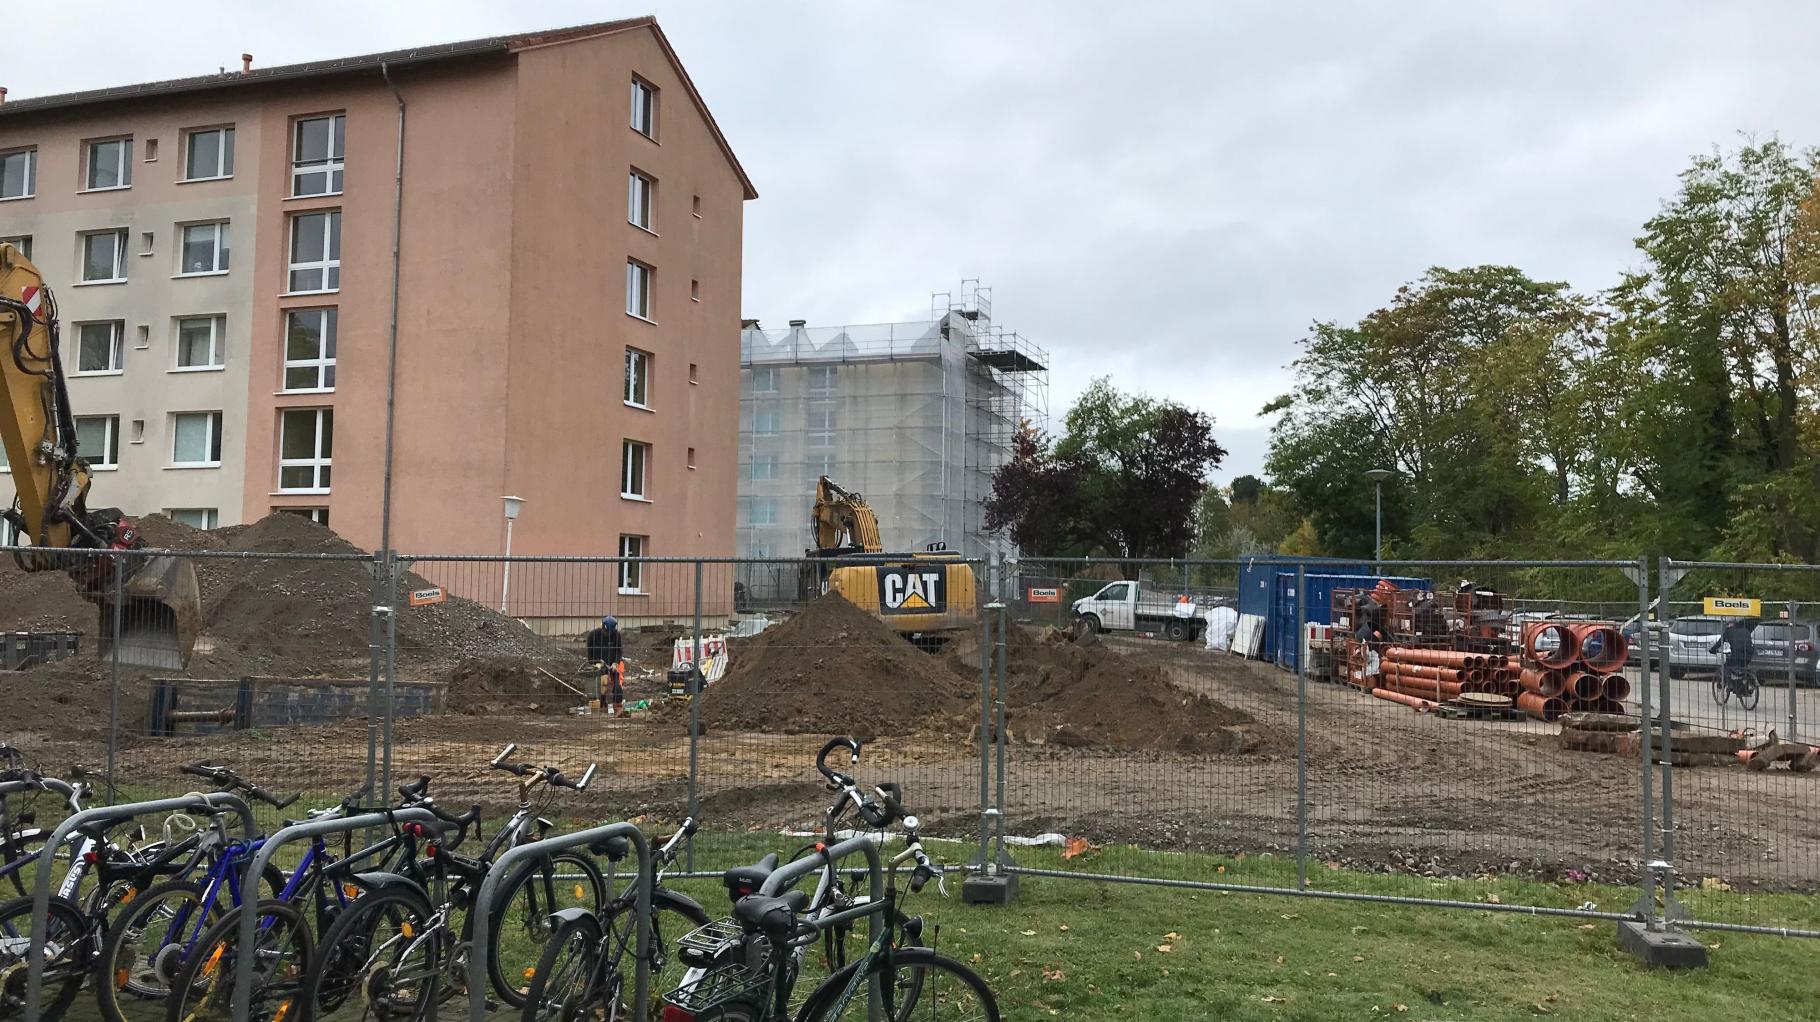 Wenig Wohnraum, wenig Budget: So ist die Situation für Studenten in Rostock